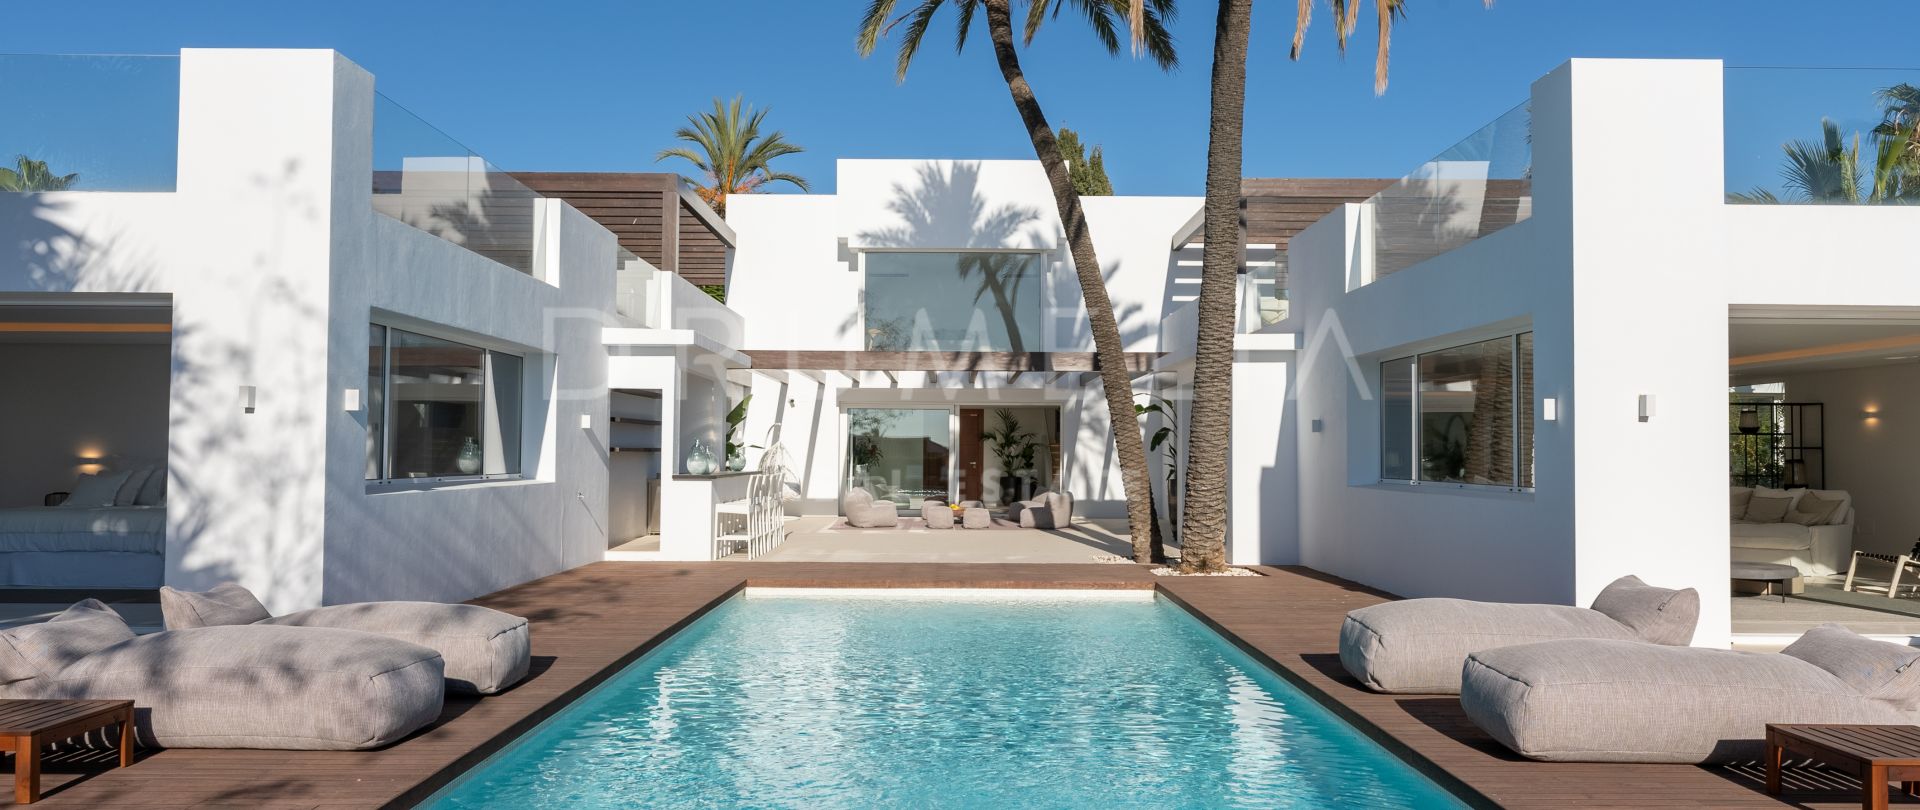 Hervorragende neue zeitgenössische Villa in Strandnähe Las Chapas, Marbella Ost